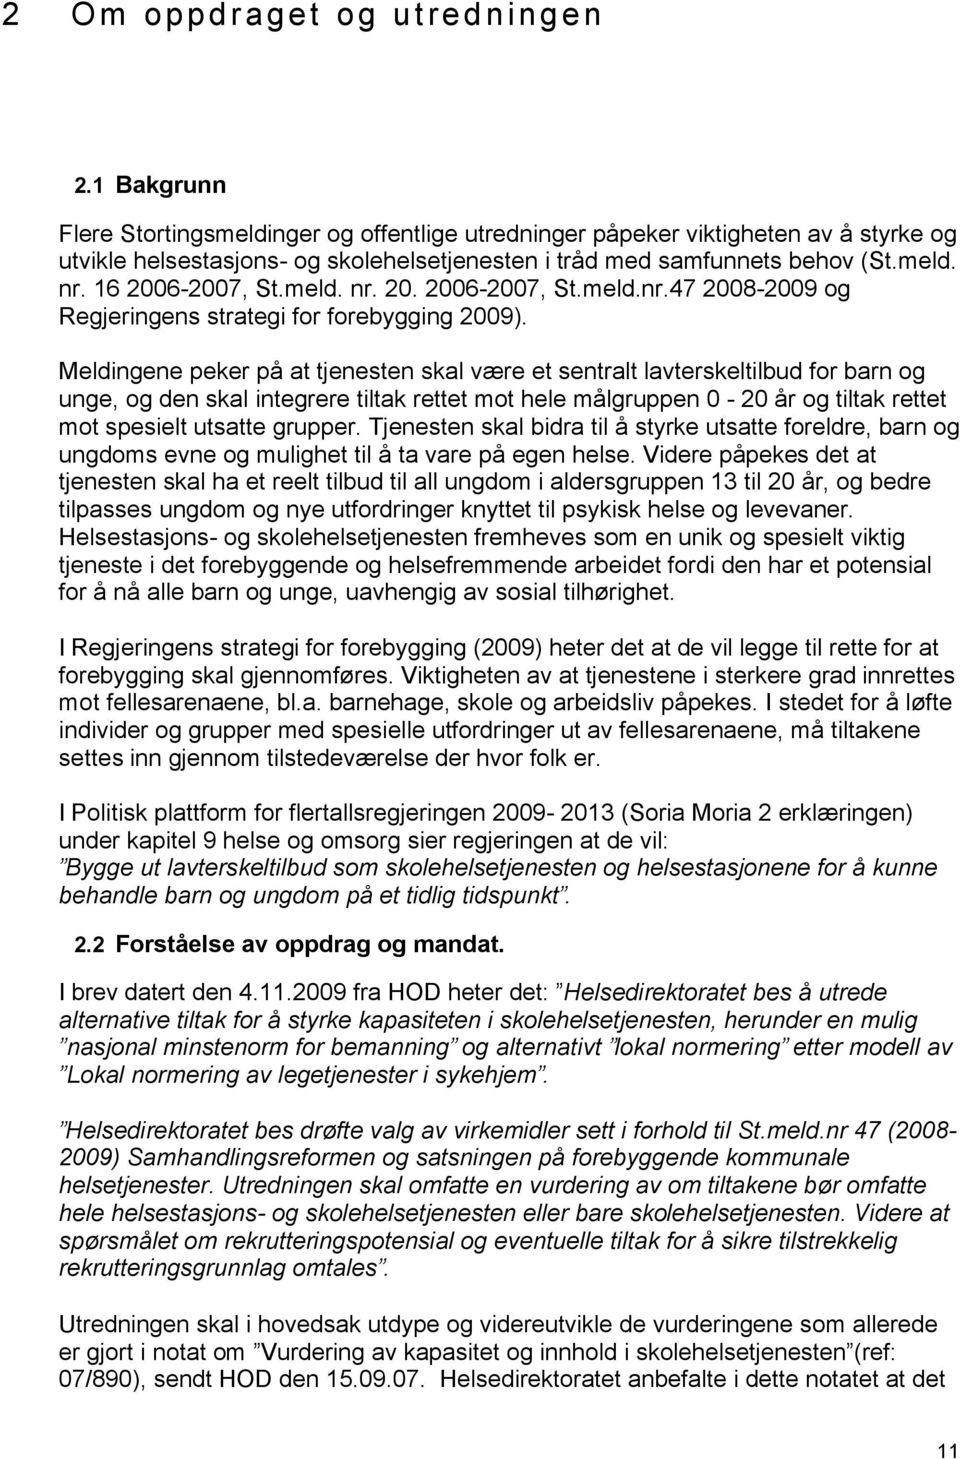 16 2006-2007, St.meld. nr. 20. 2006-2007, St.meld.nr.47 2008-2009 og Regjeringens strategi for forebygging 2009).